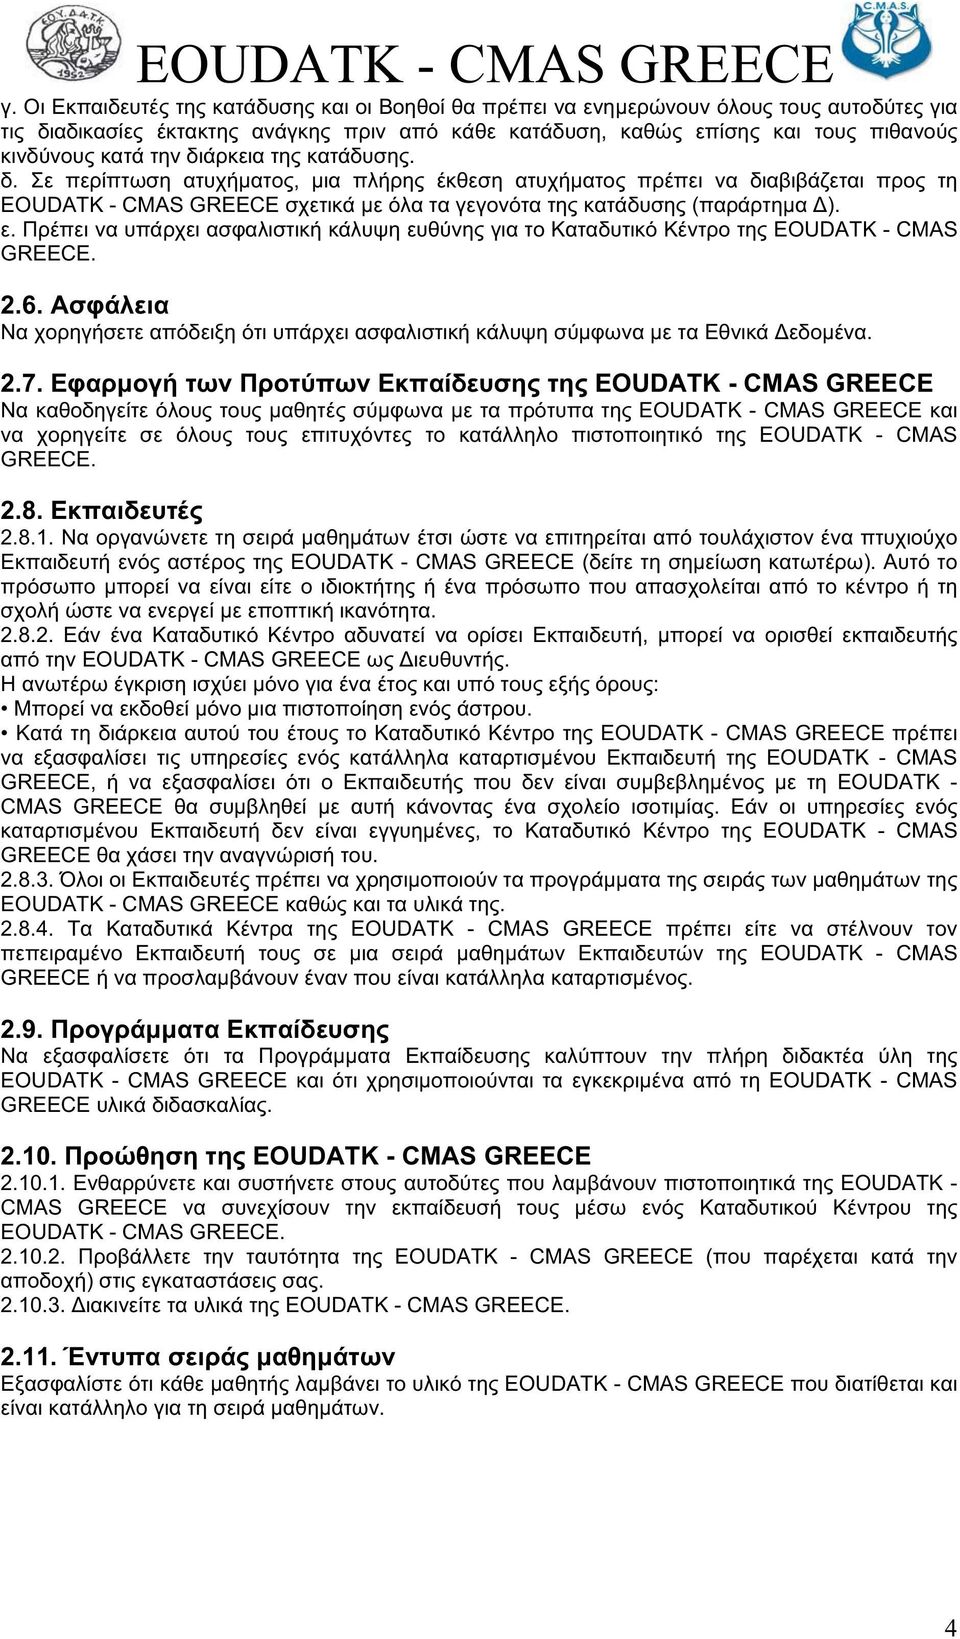 EOUDATK - CMAS GREECE. 2.8.4. EOUDATK - CMAS GREECE EOUDATK - CMAS GREECE. 2.9. EOUDATK - CMAS GREECE EOUDATK - CMAS GREECE. 2.10.